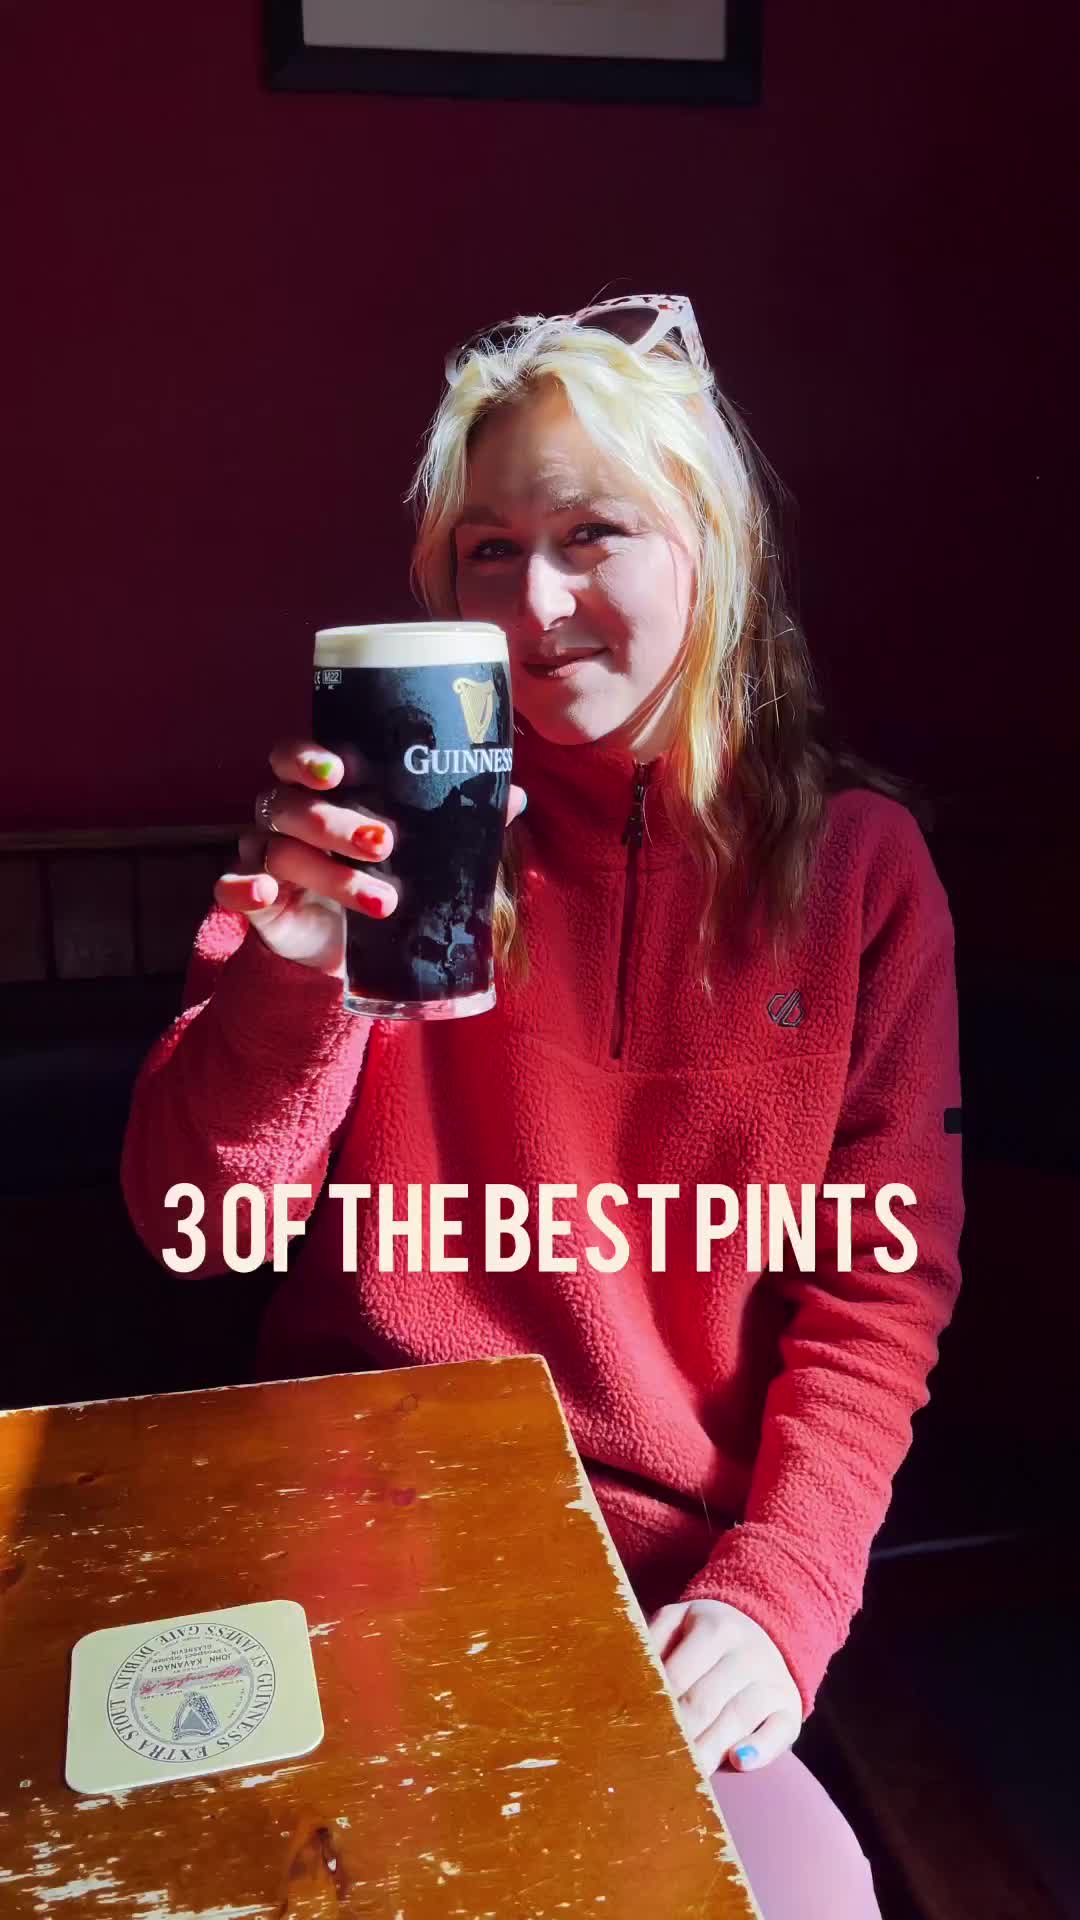 Best Pints of Guinness in Dublin: Top 3 Picks